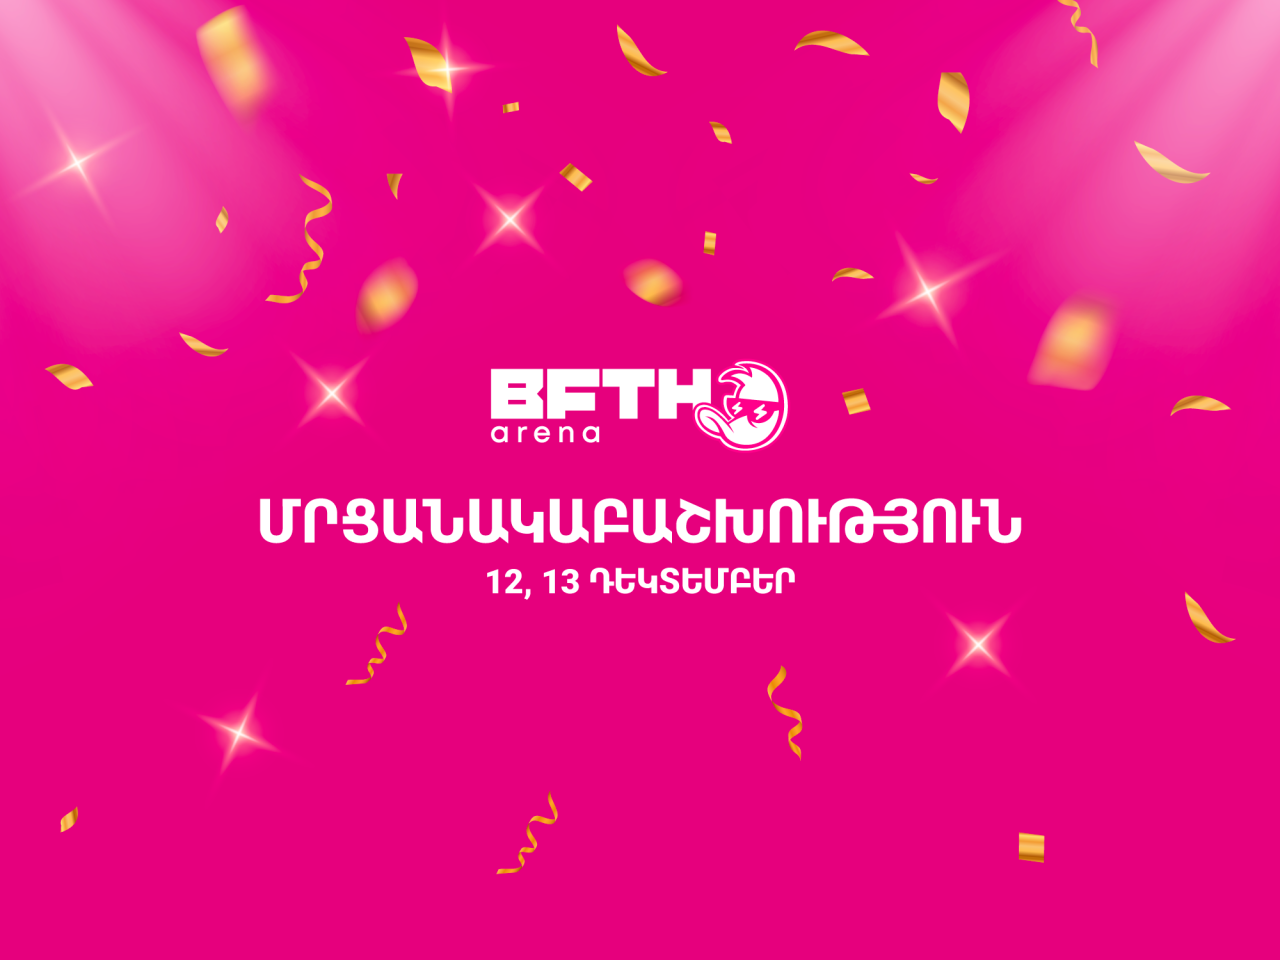 Երևանում կկայանա 3 333 000 FTN մրցանակային ֆոնդով առաջին B.F.T.H. Arena մրցանակաբաշխությունը